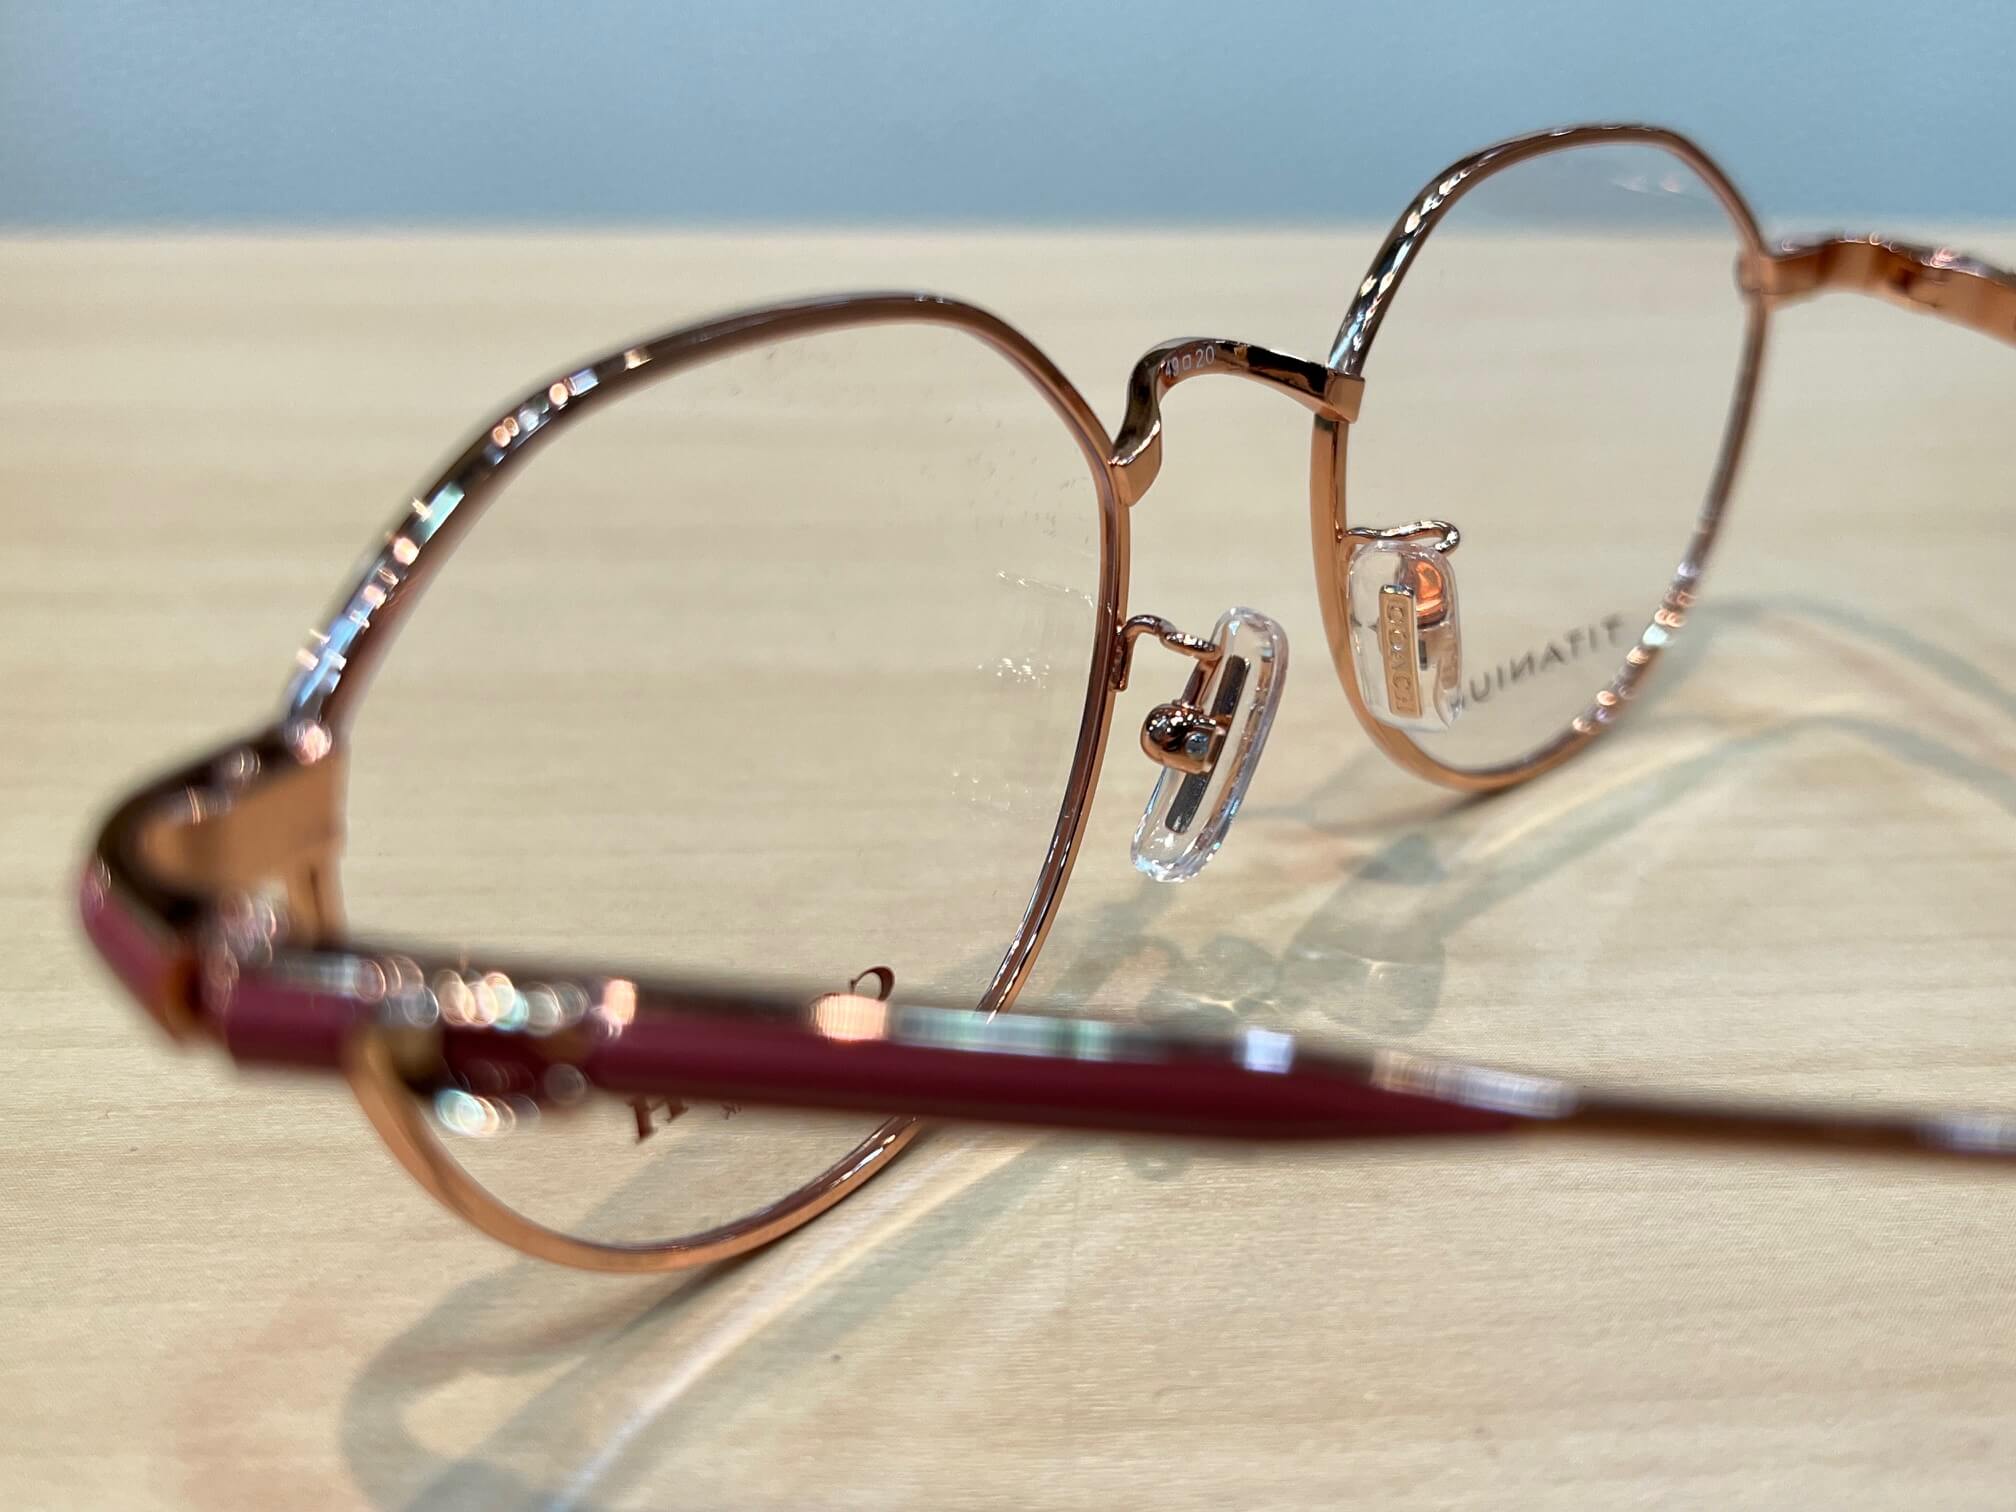 コーチHC5173TDシンプルでエレガントなクラウンパント女性用メガネです。 | 飯塚 田川のメガネ店 メガネのサトー